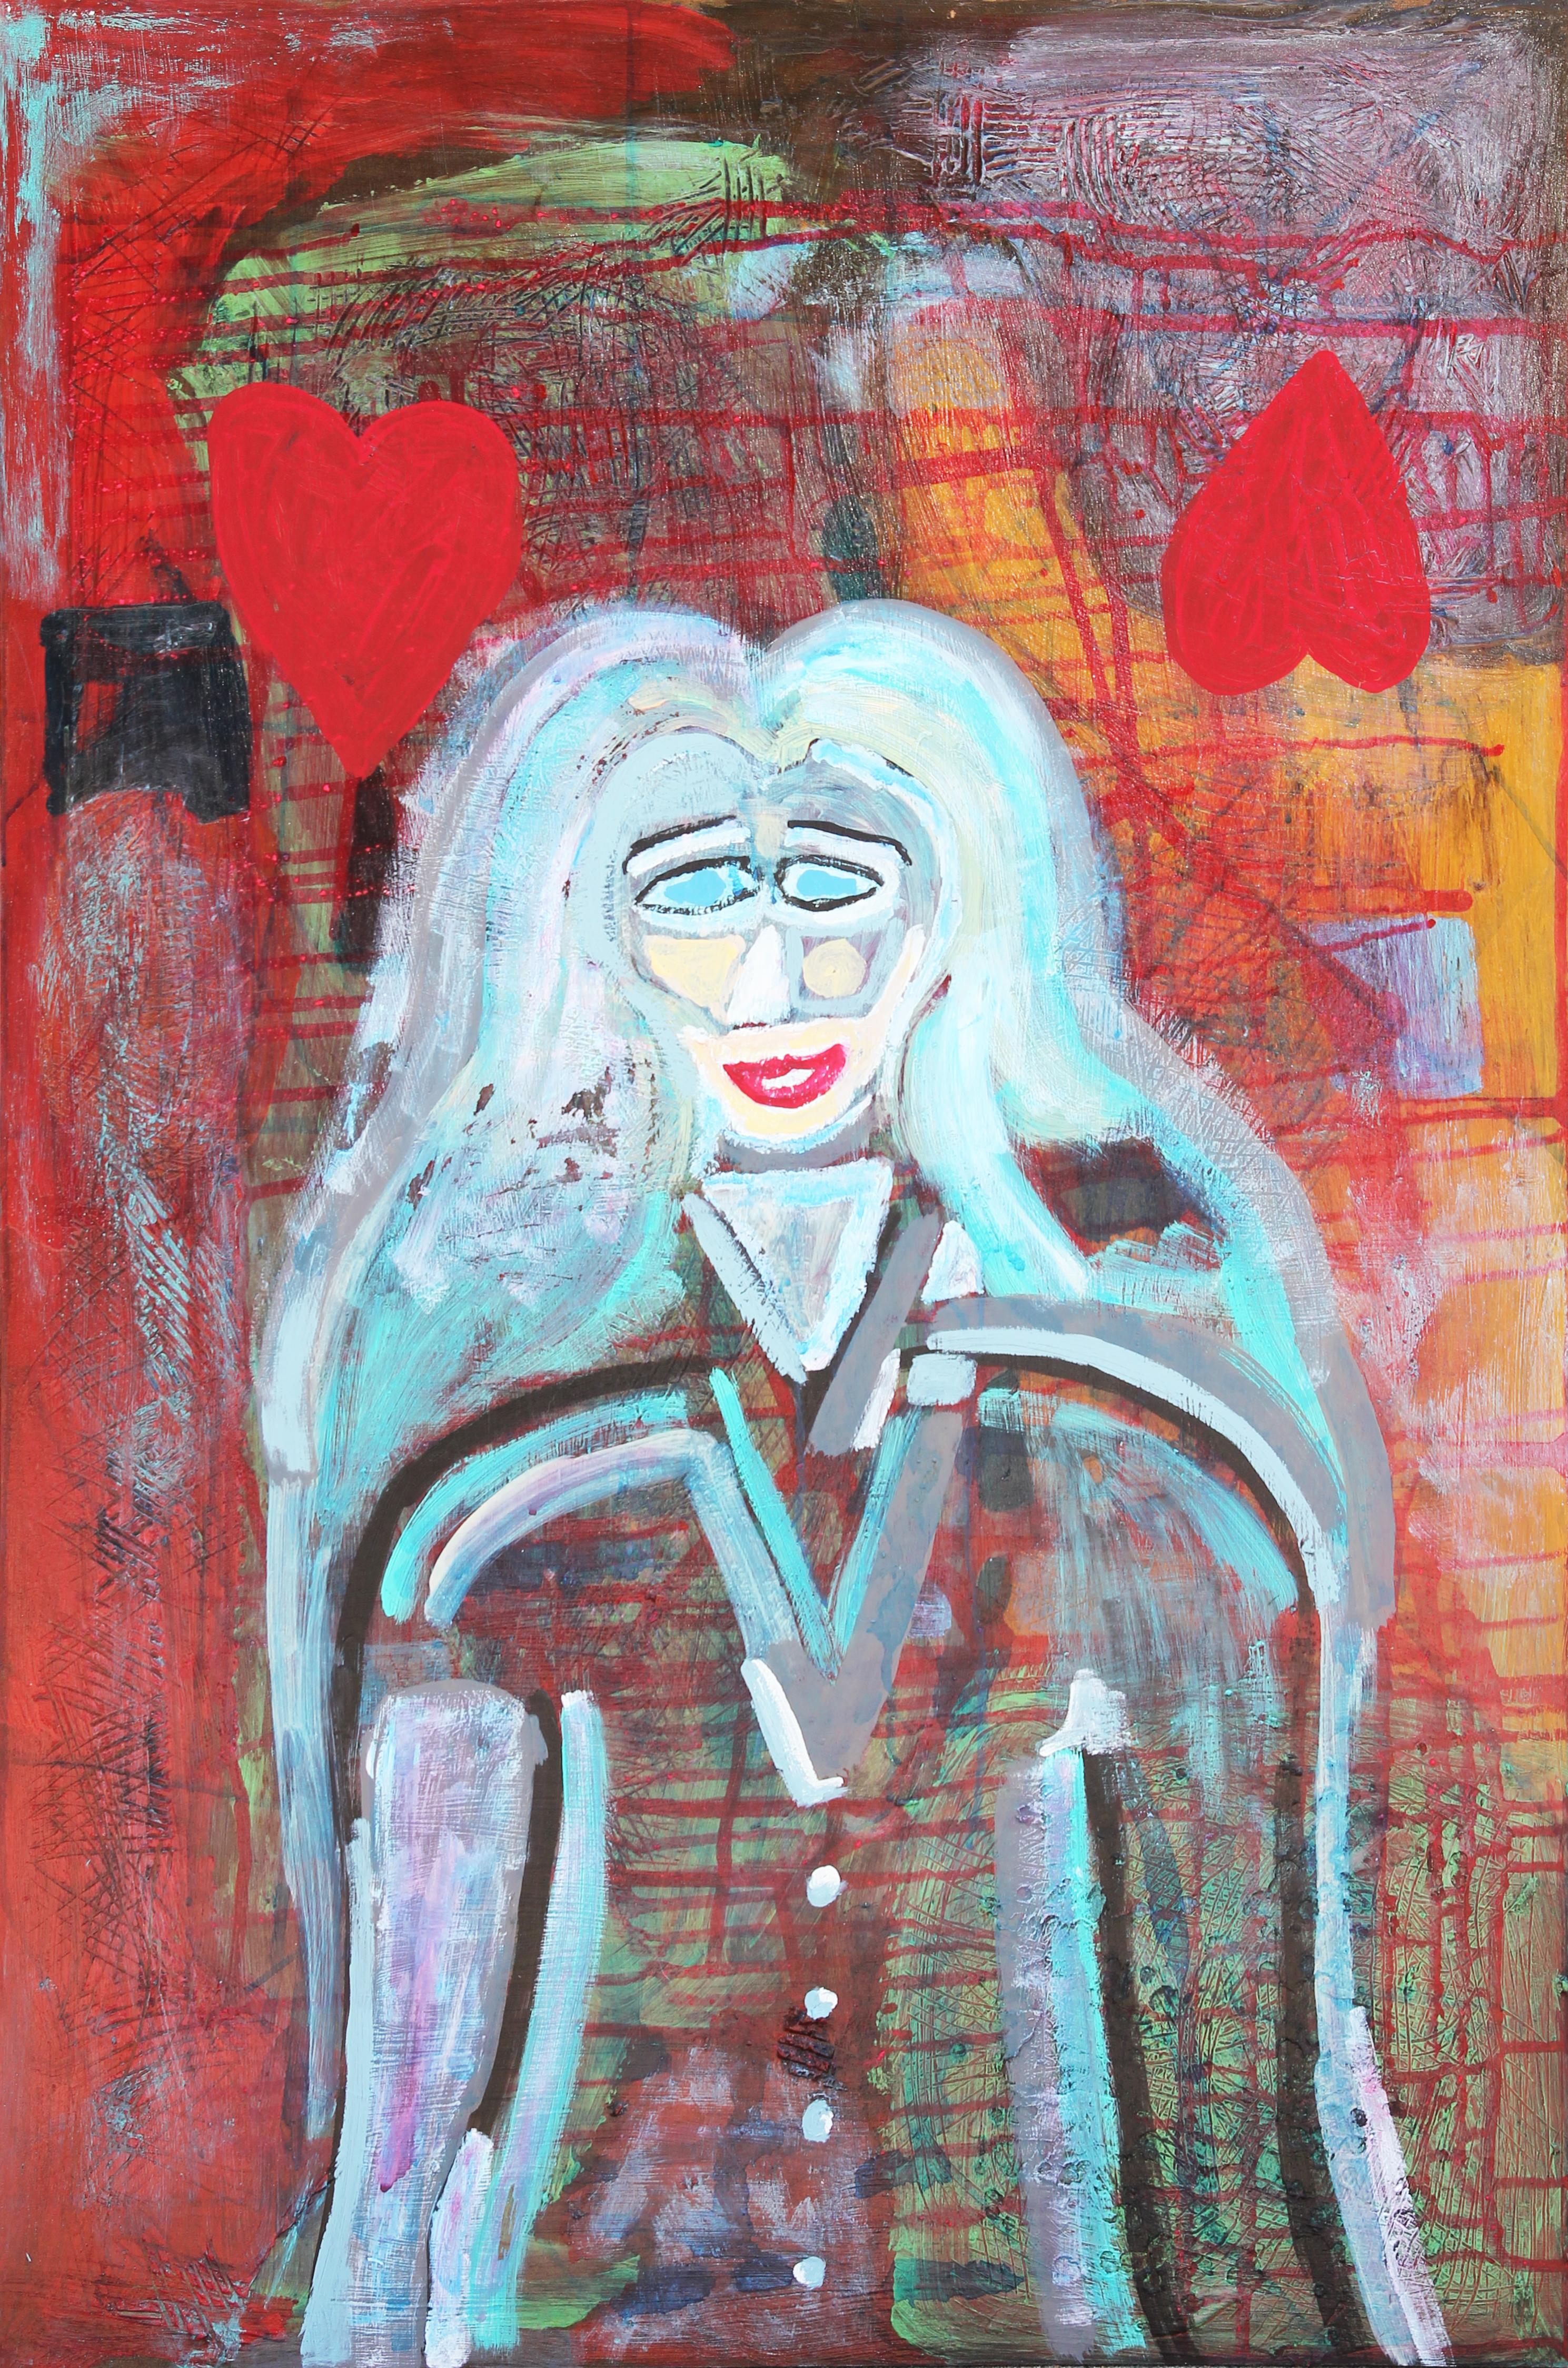 Figurative Painting Paul Reeves - "Maybe, Maybe Not" peinture abstraite longitudinale bleue et rouge d'un portrait de femme